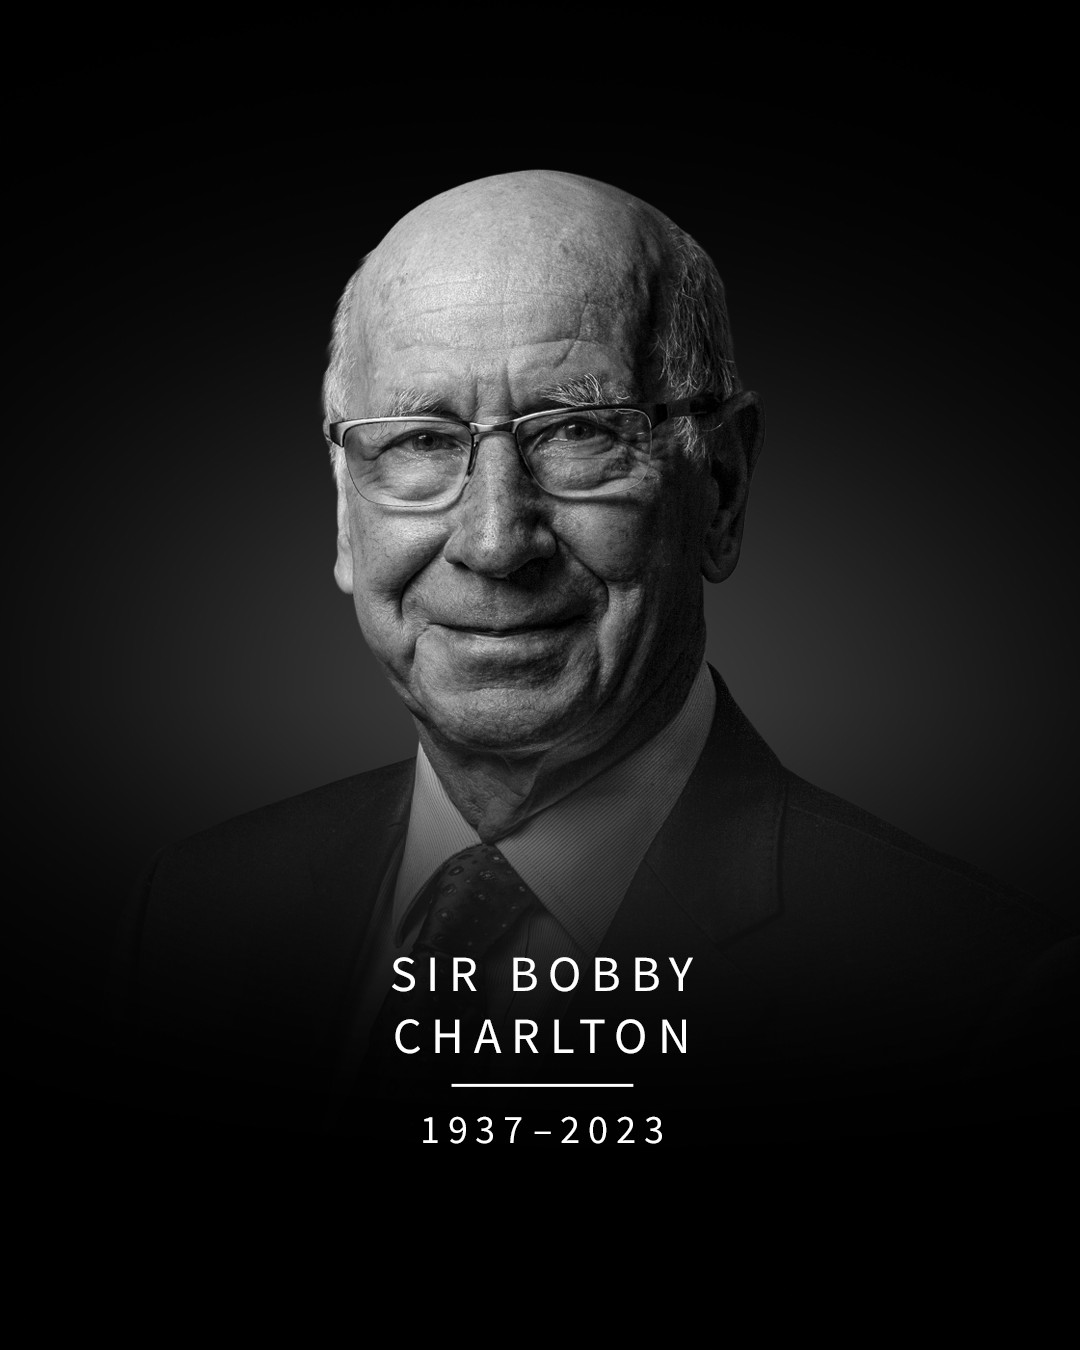 A încetat din viaţă legenda fotbalului englez, Sir Bobby Charlton, la vârsta de 86 de ani